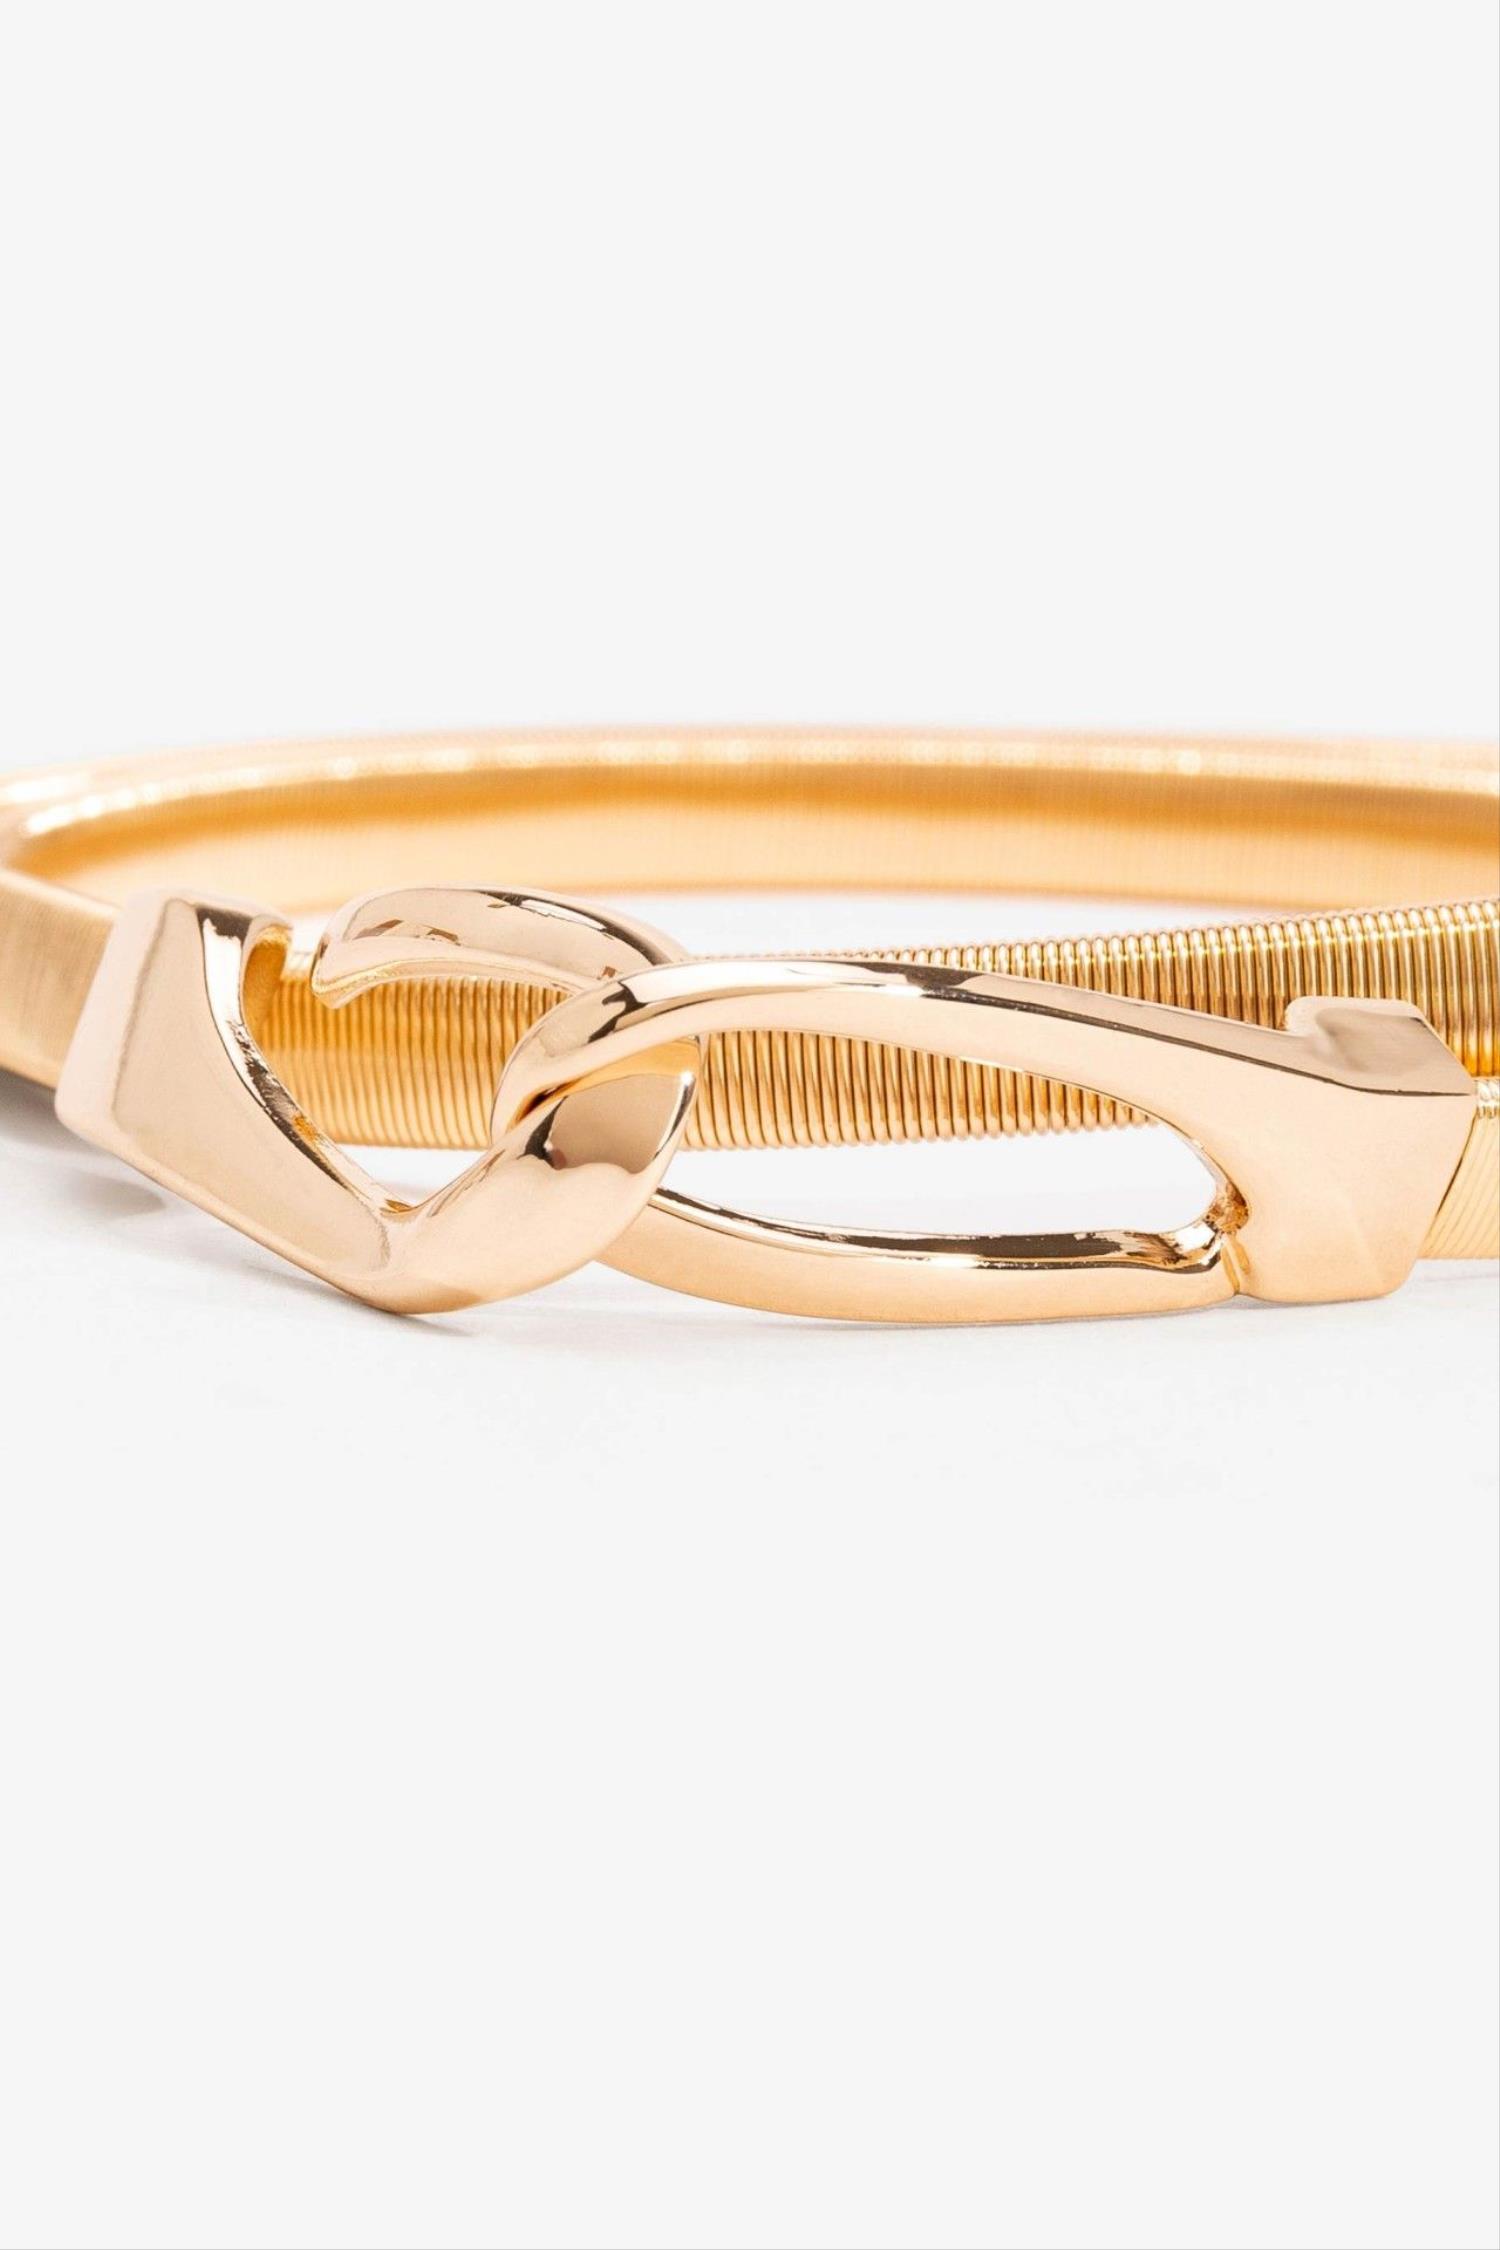 Cinturón metálico ajustable en color dorado de la marca Vilanova con referencia 71004455_990.